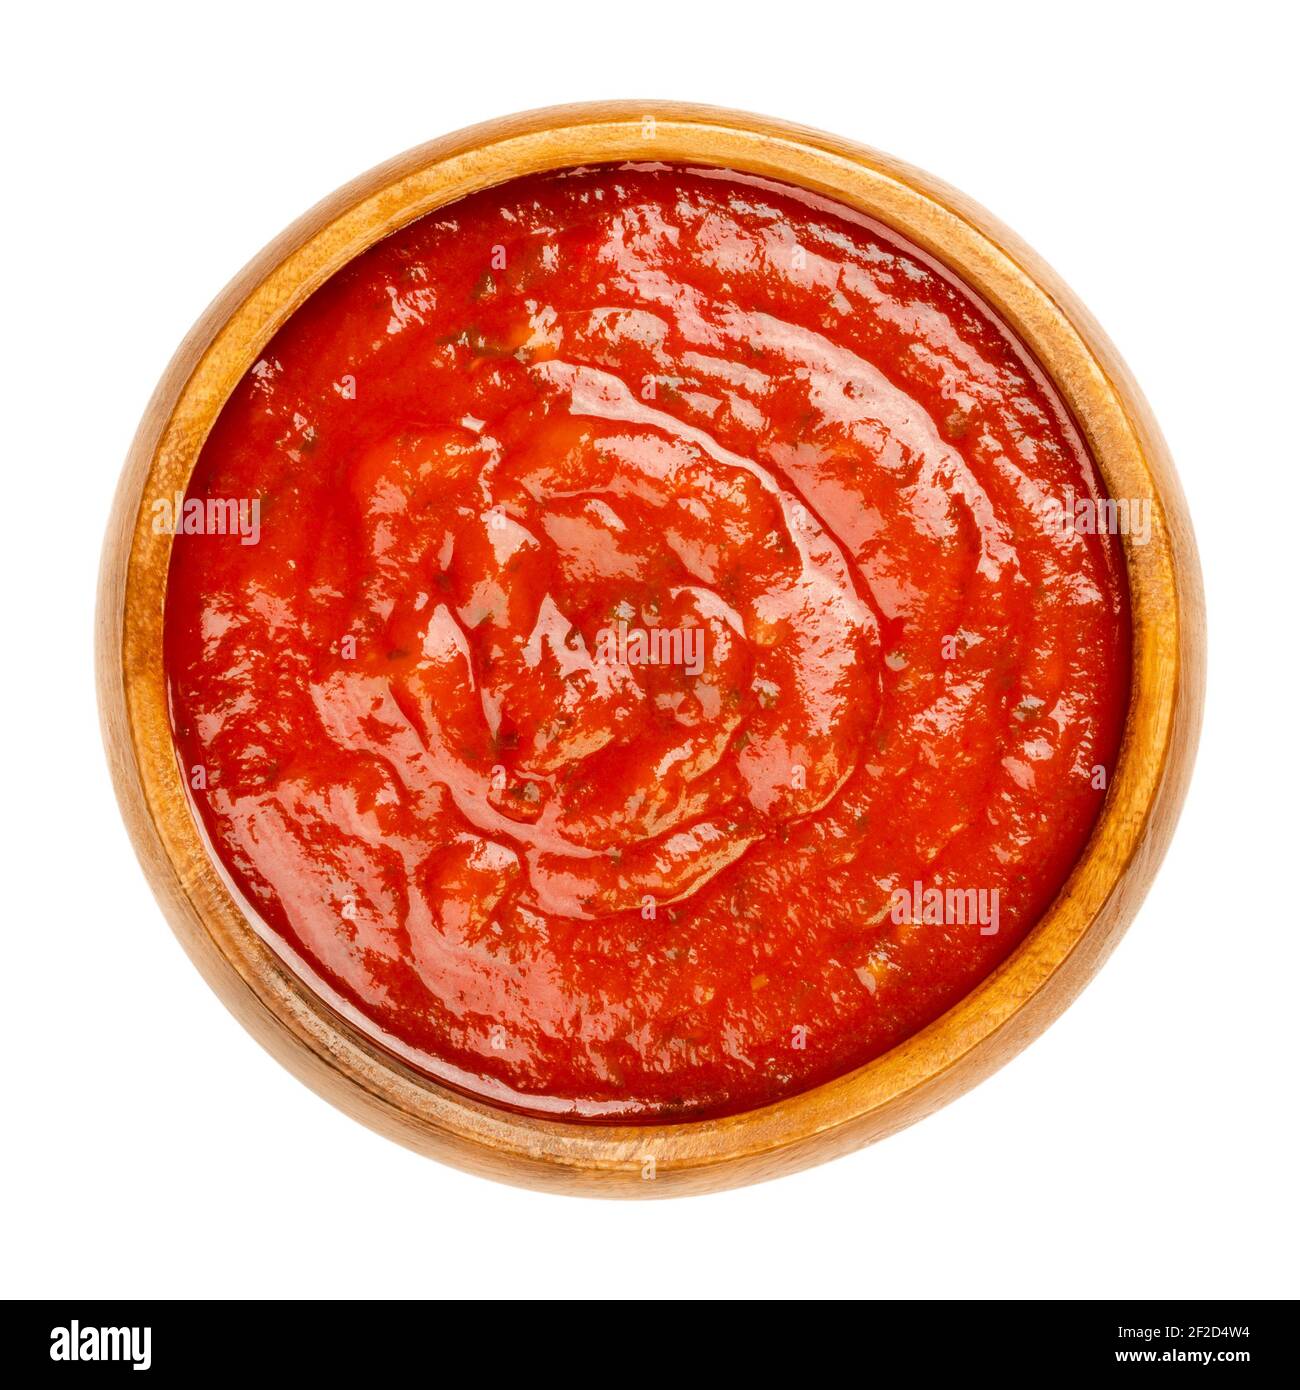 Sauce Arrabbiata dans un bol en bois. Sauce tomate italienne épicée pour pâtes, faite à partir de tomates, d'ail et de piments rouges séchés, cuits dans de l'huile d'olive. Banque D'Images